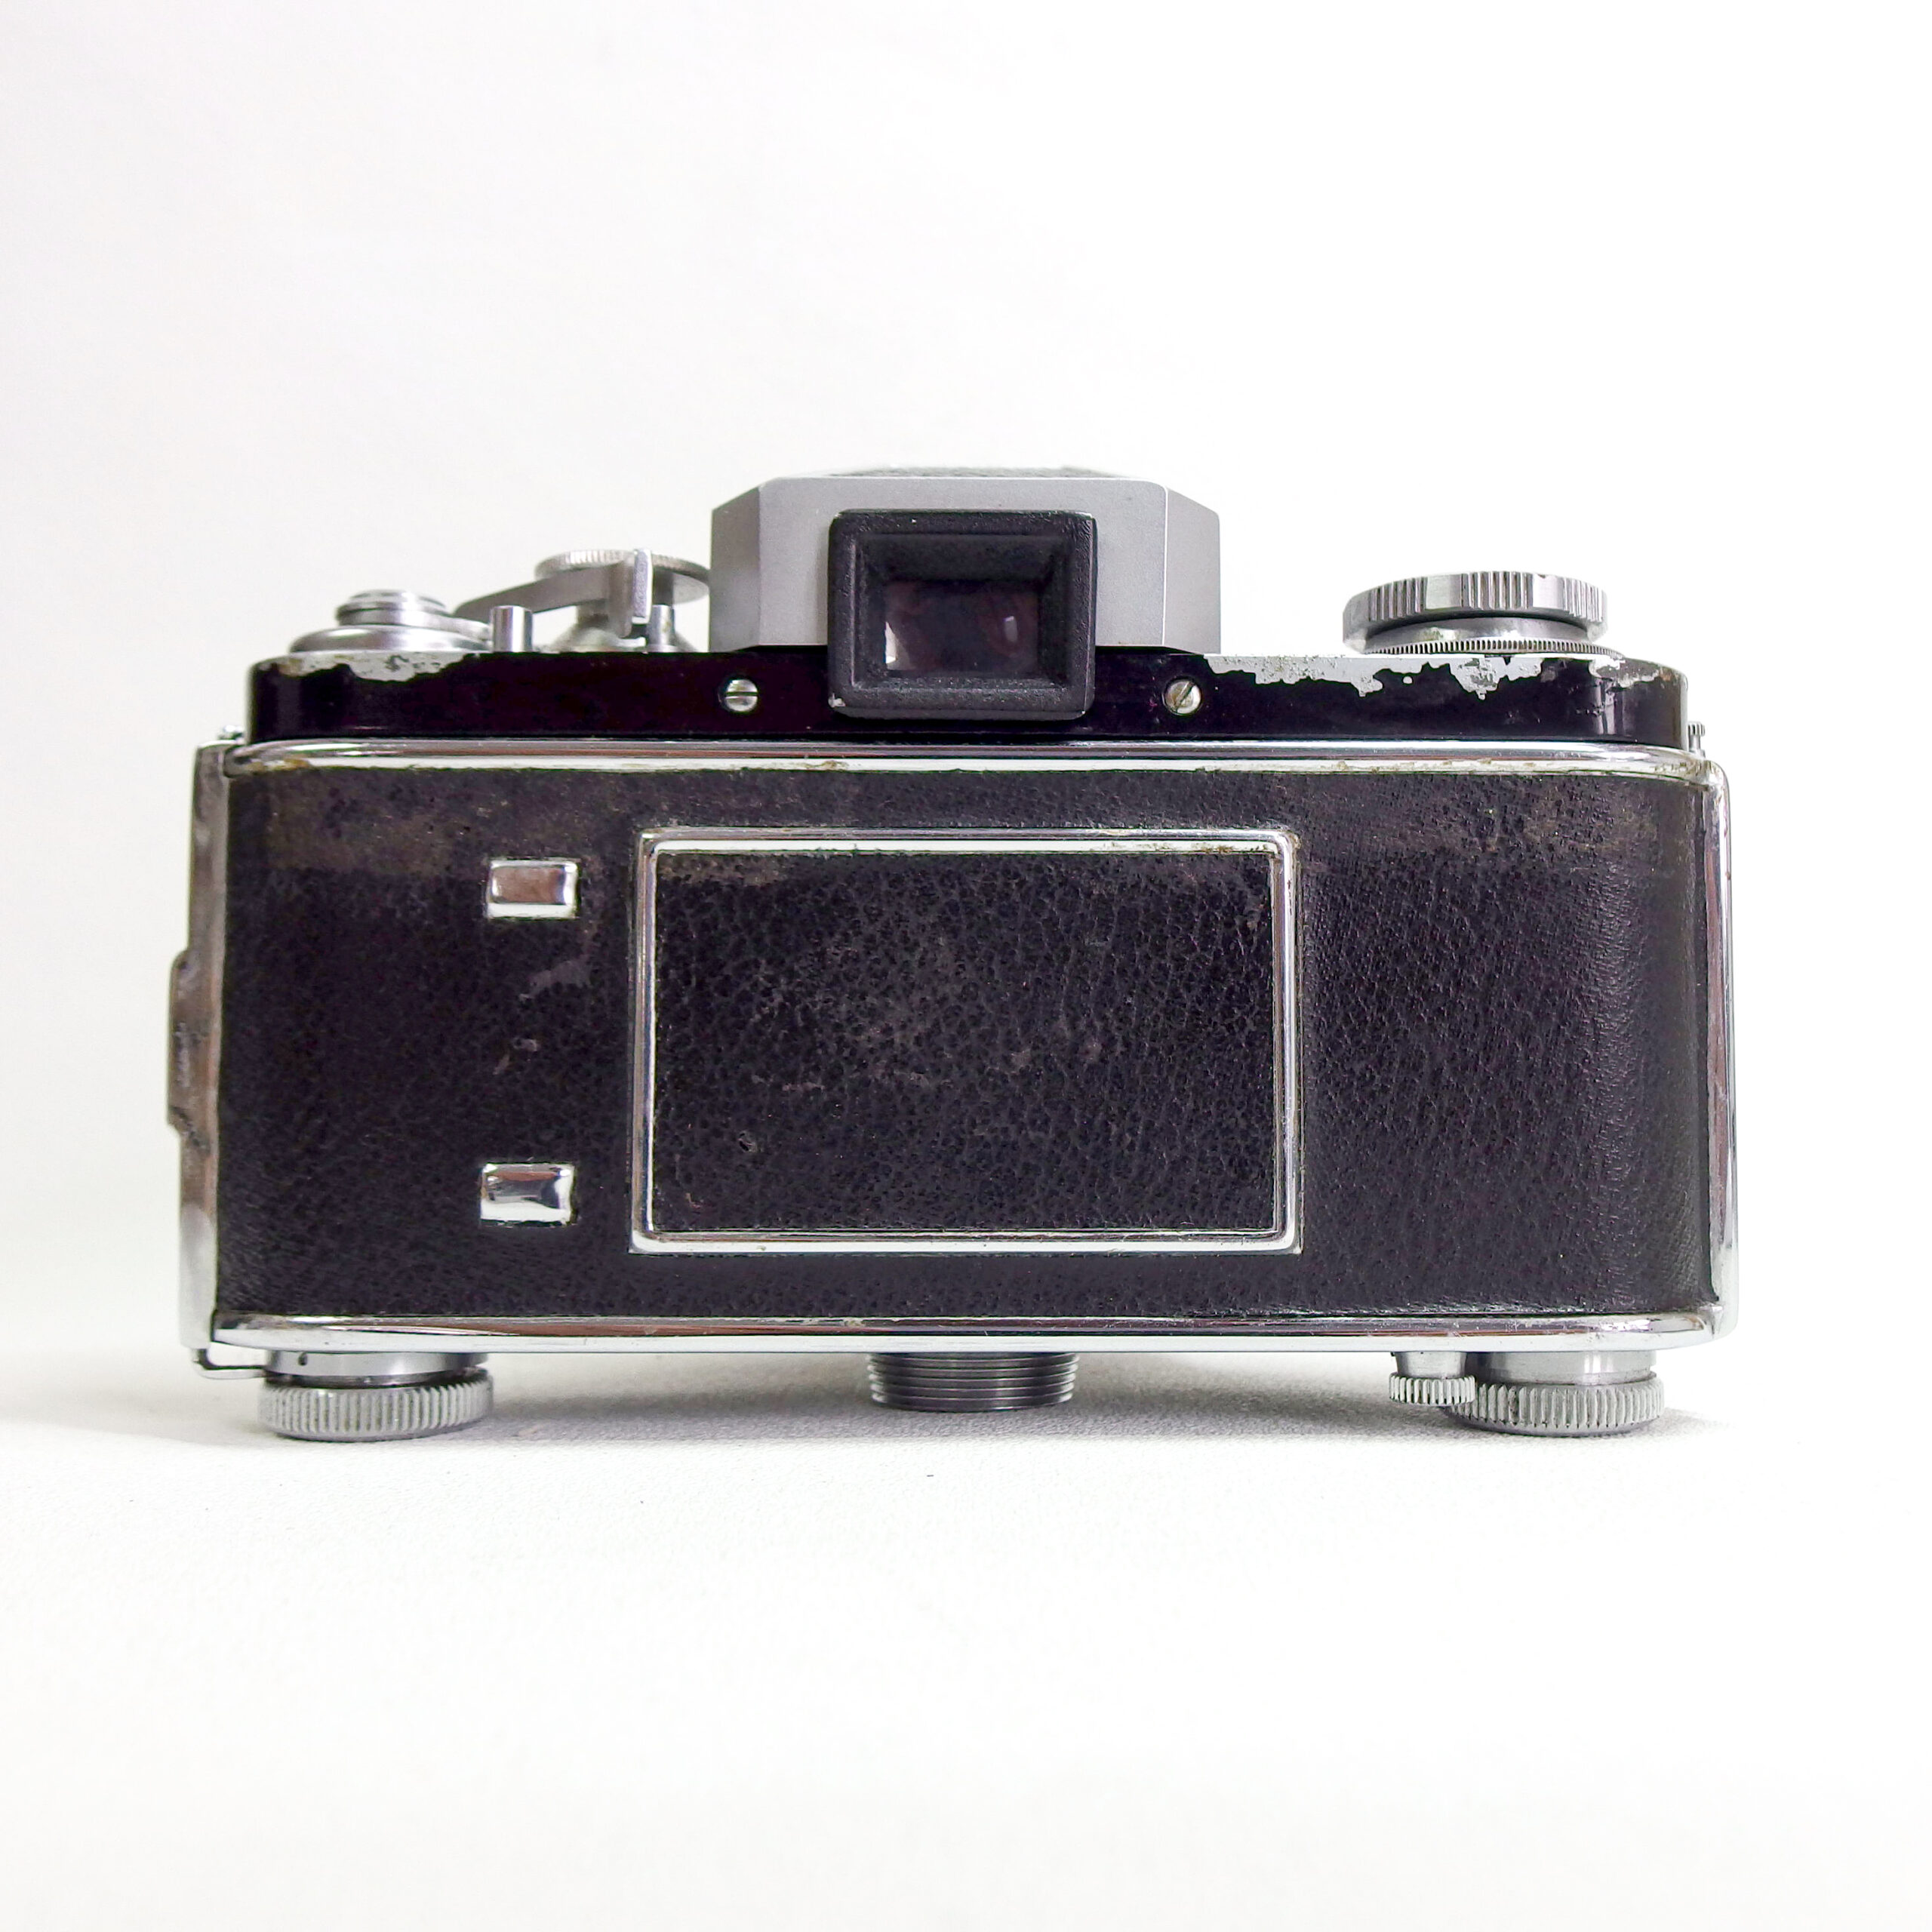 Exakta varex IIA Film appareil photo reflexCorps Uniquement comme-Stabilisateur d'image 